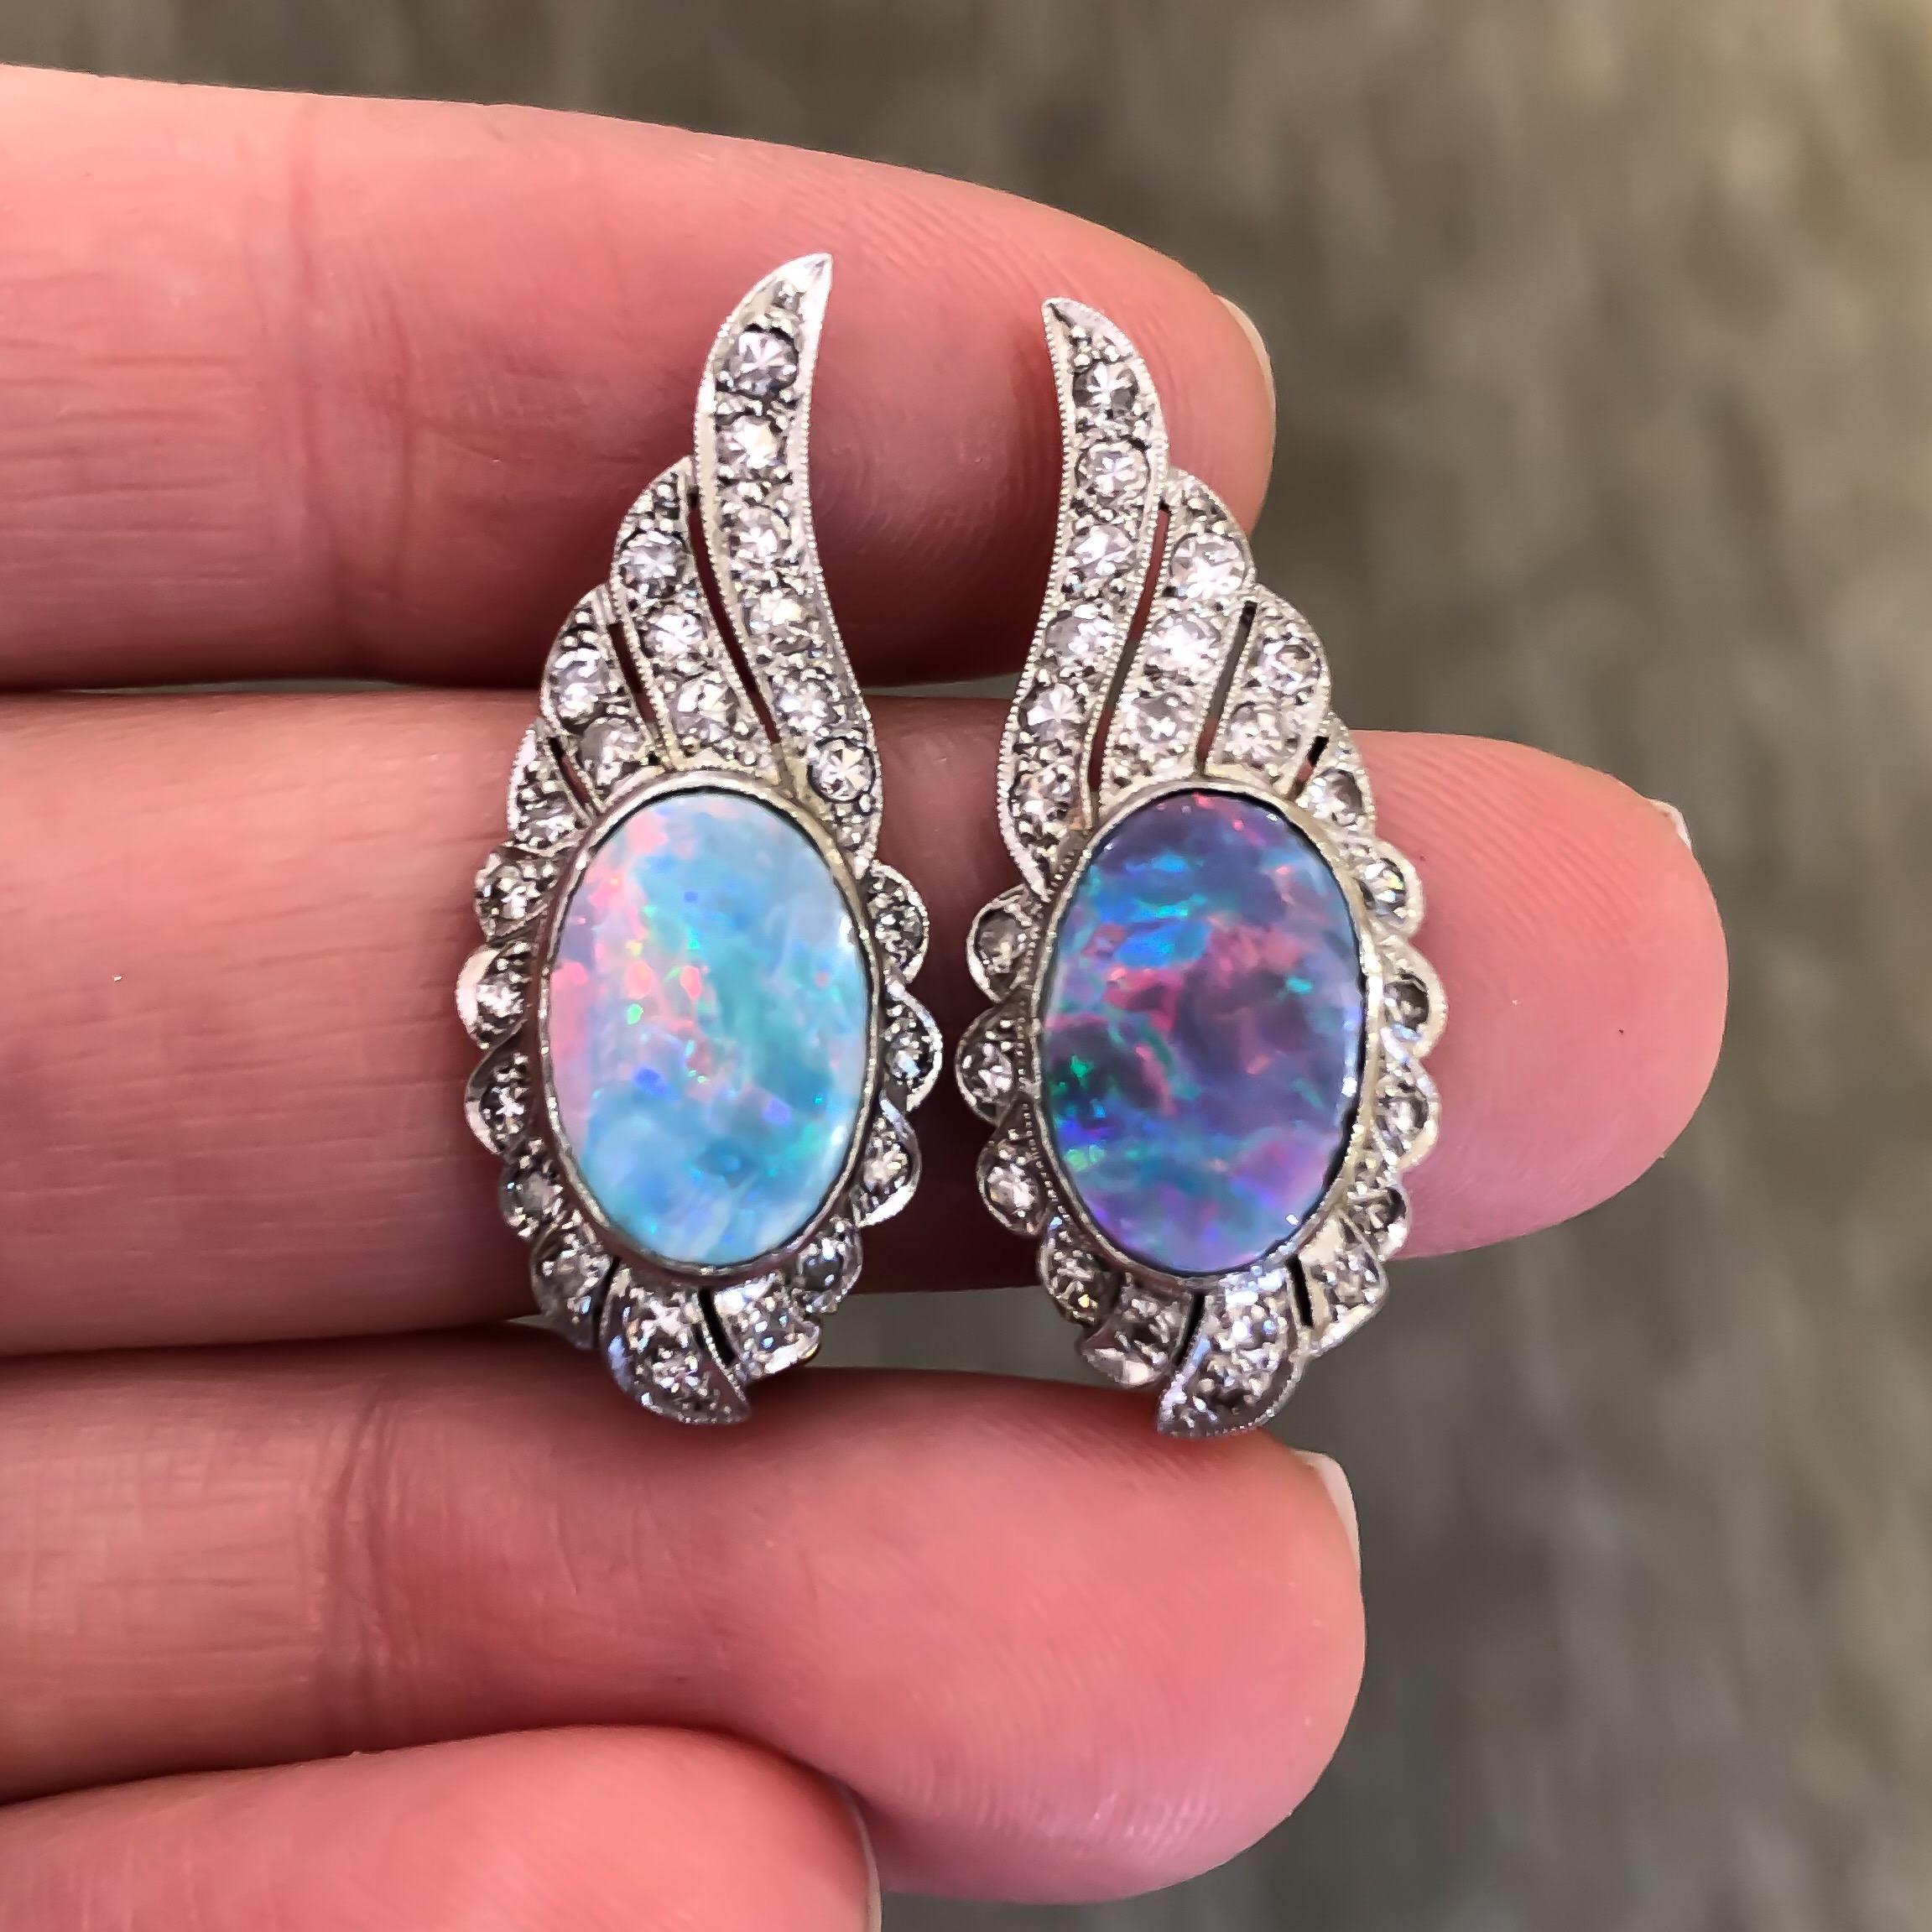 Diese atemberaubenden australischen Opale im Vintage-Doublettenformat sind leuchtend bläulich-grün mit roten und gelben Reflexen. Sie sind sicher in flügelförmige Clip-Ohrringe aus Platin eingefasst, die mit Diamanten im Einzelschliff besetzt sind